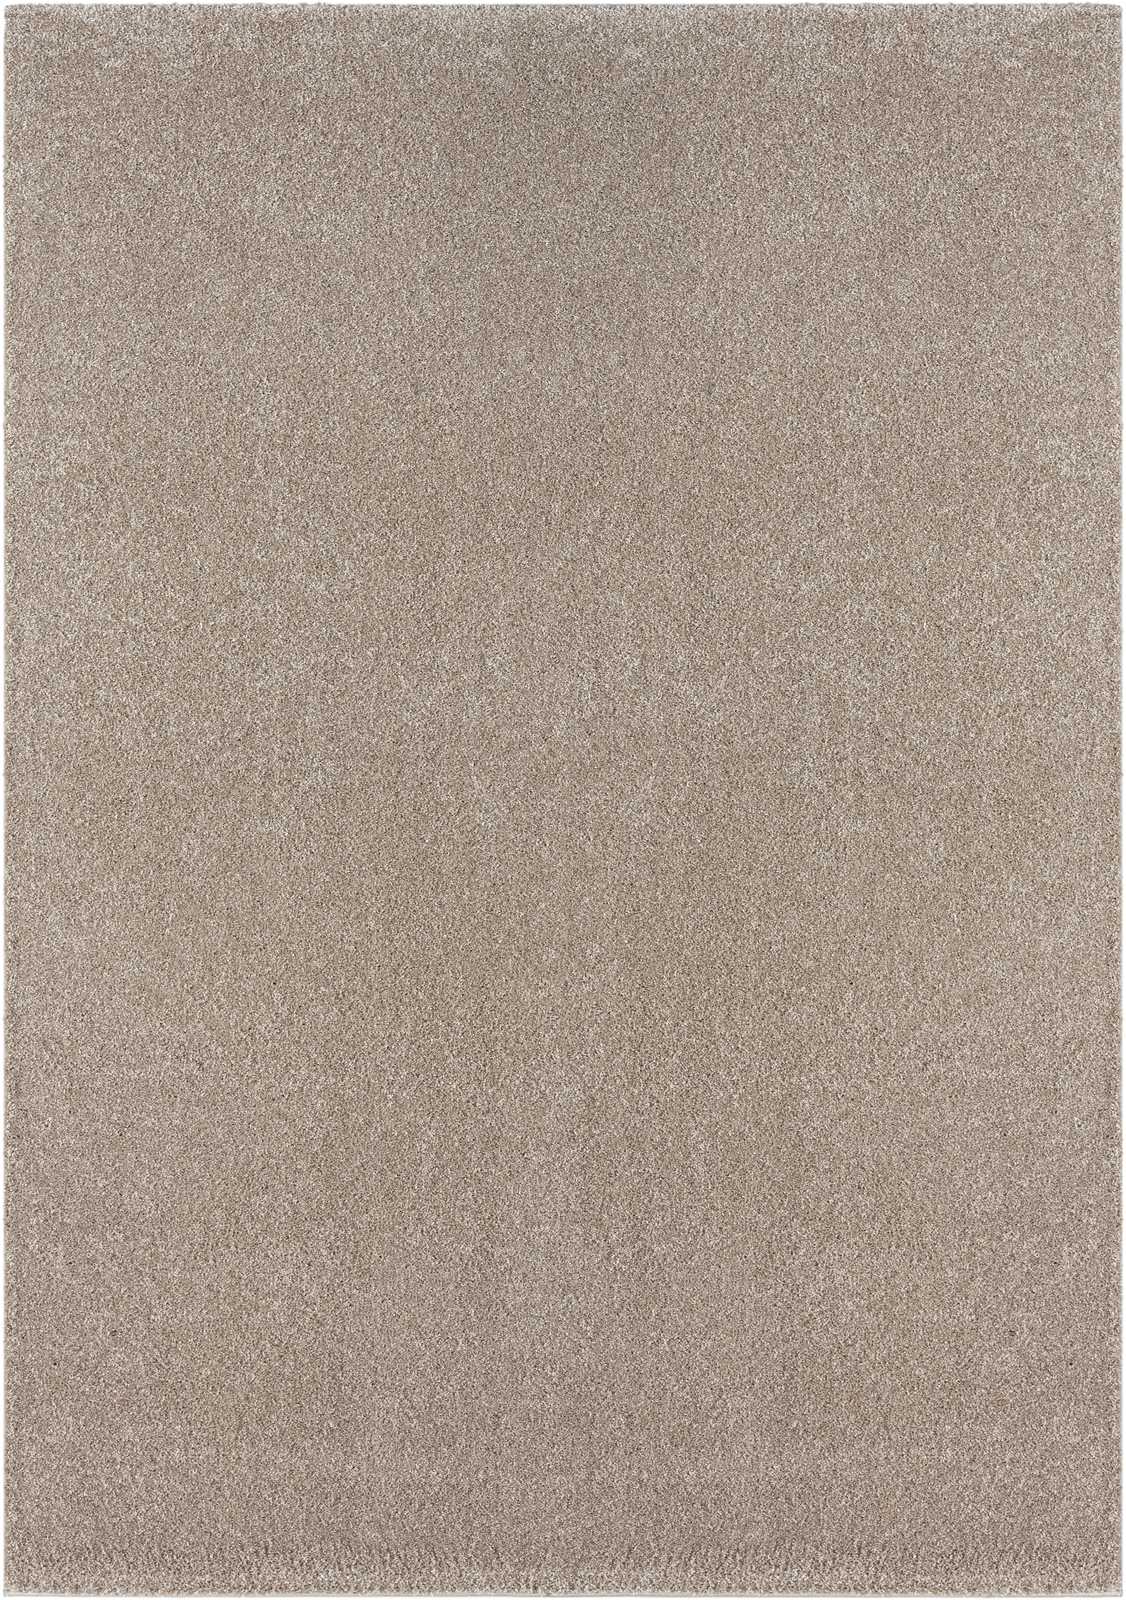             Sanfter Kurzflor Teppich in Beige – 200 x 140 cm
        